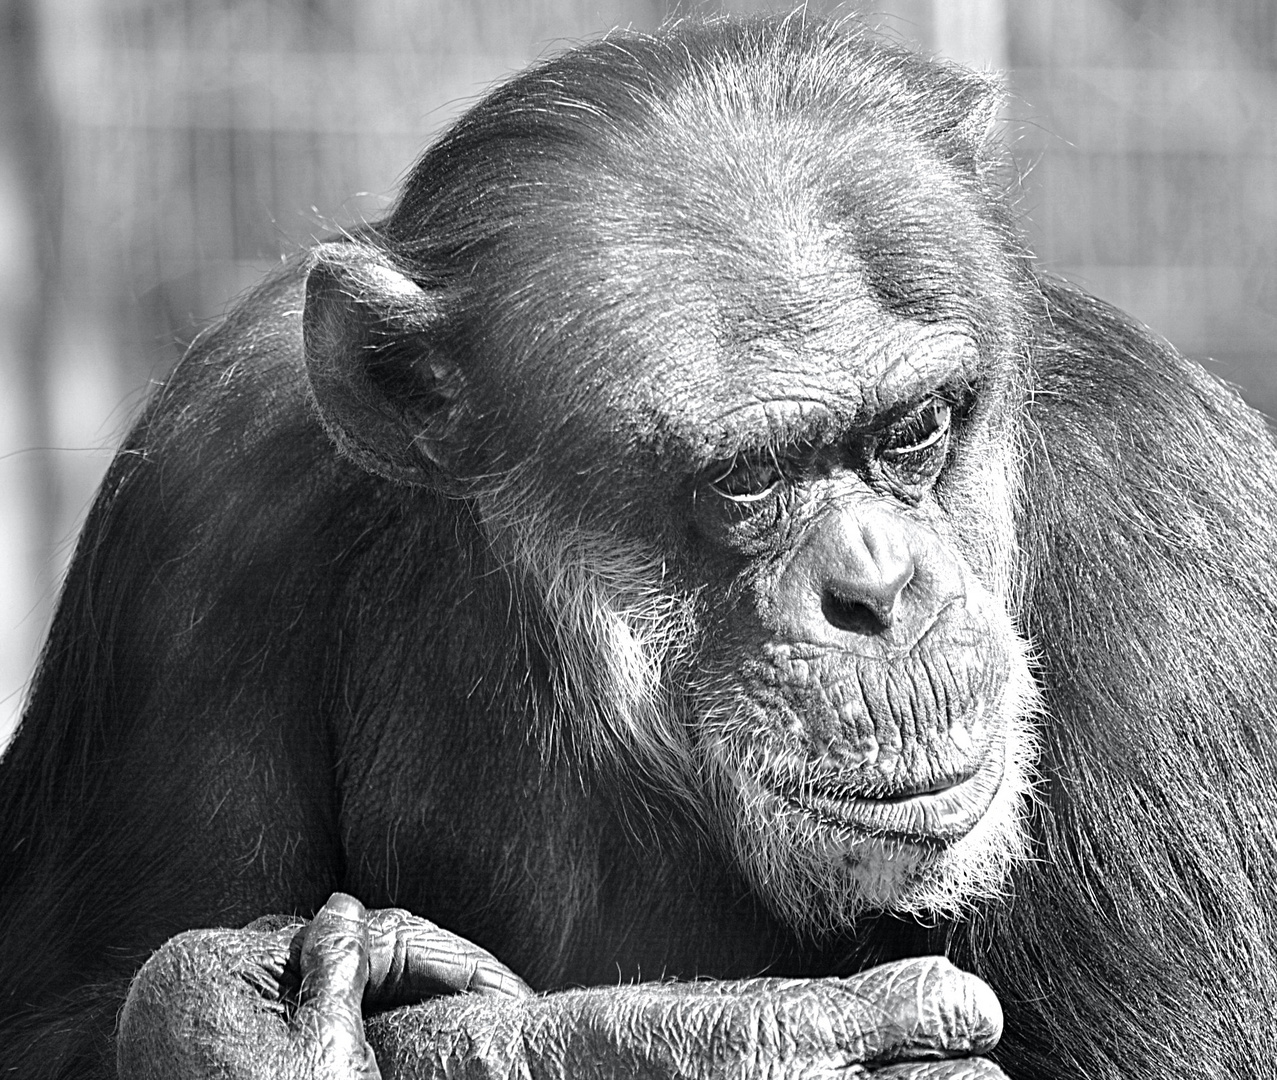 Der Schimpanse schaut sich in Ruhe um